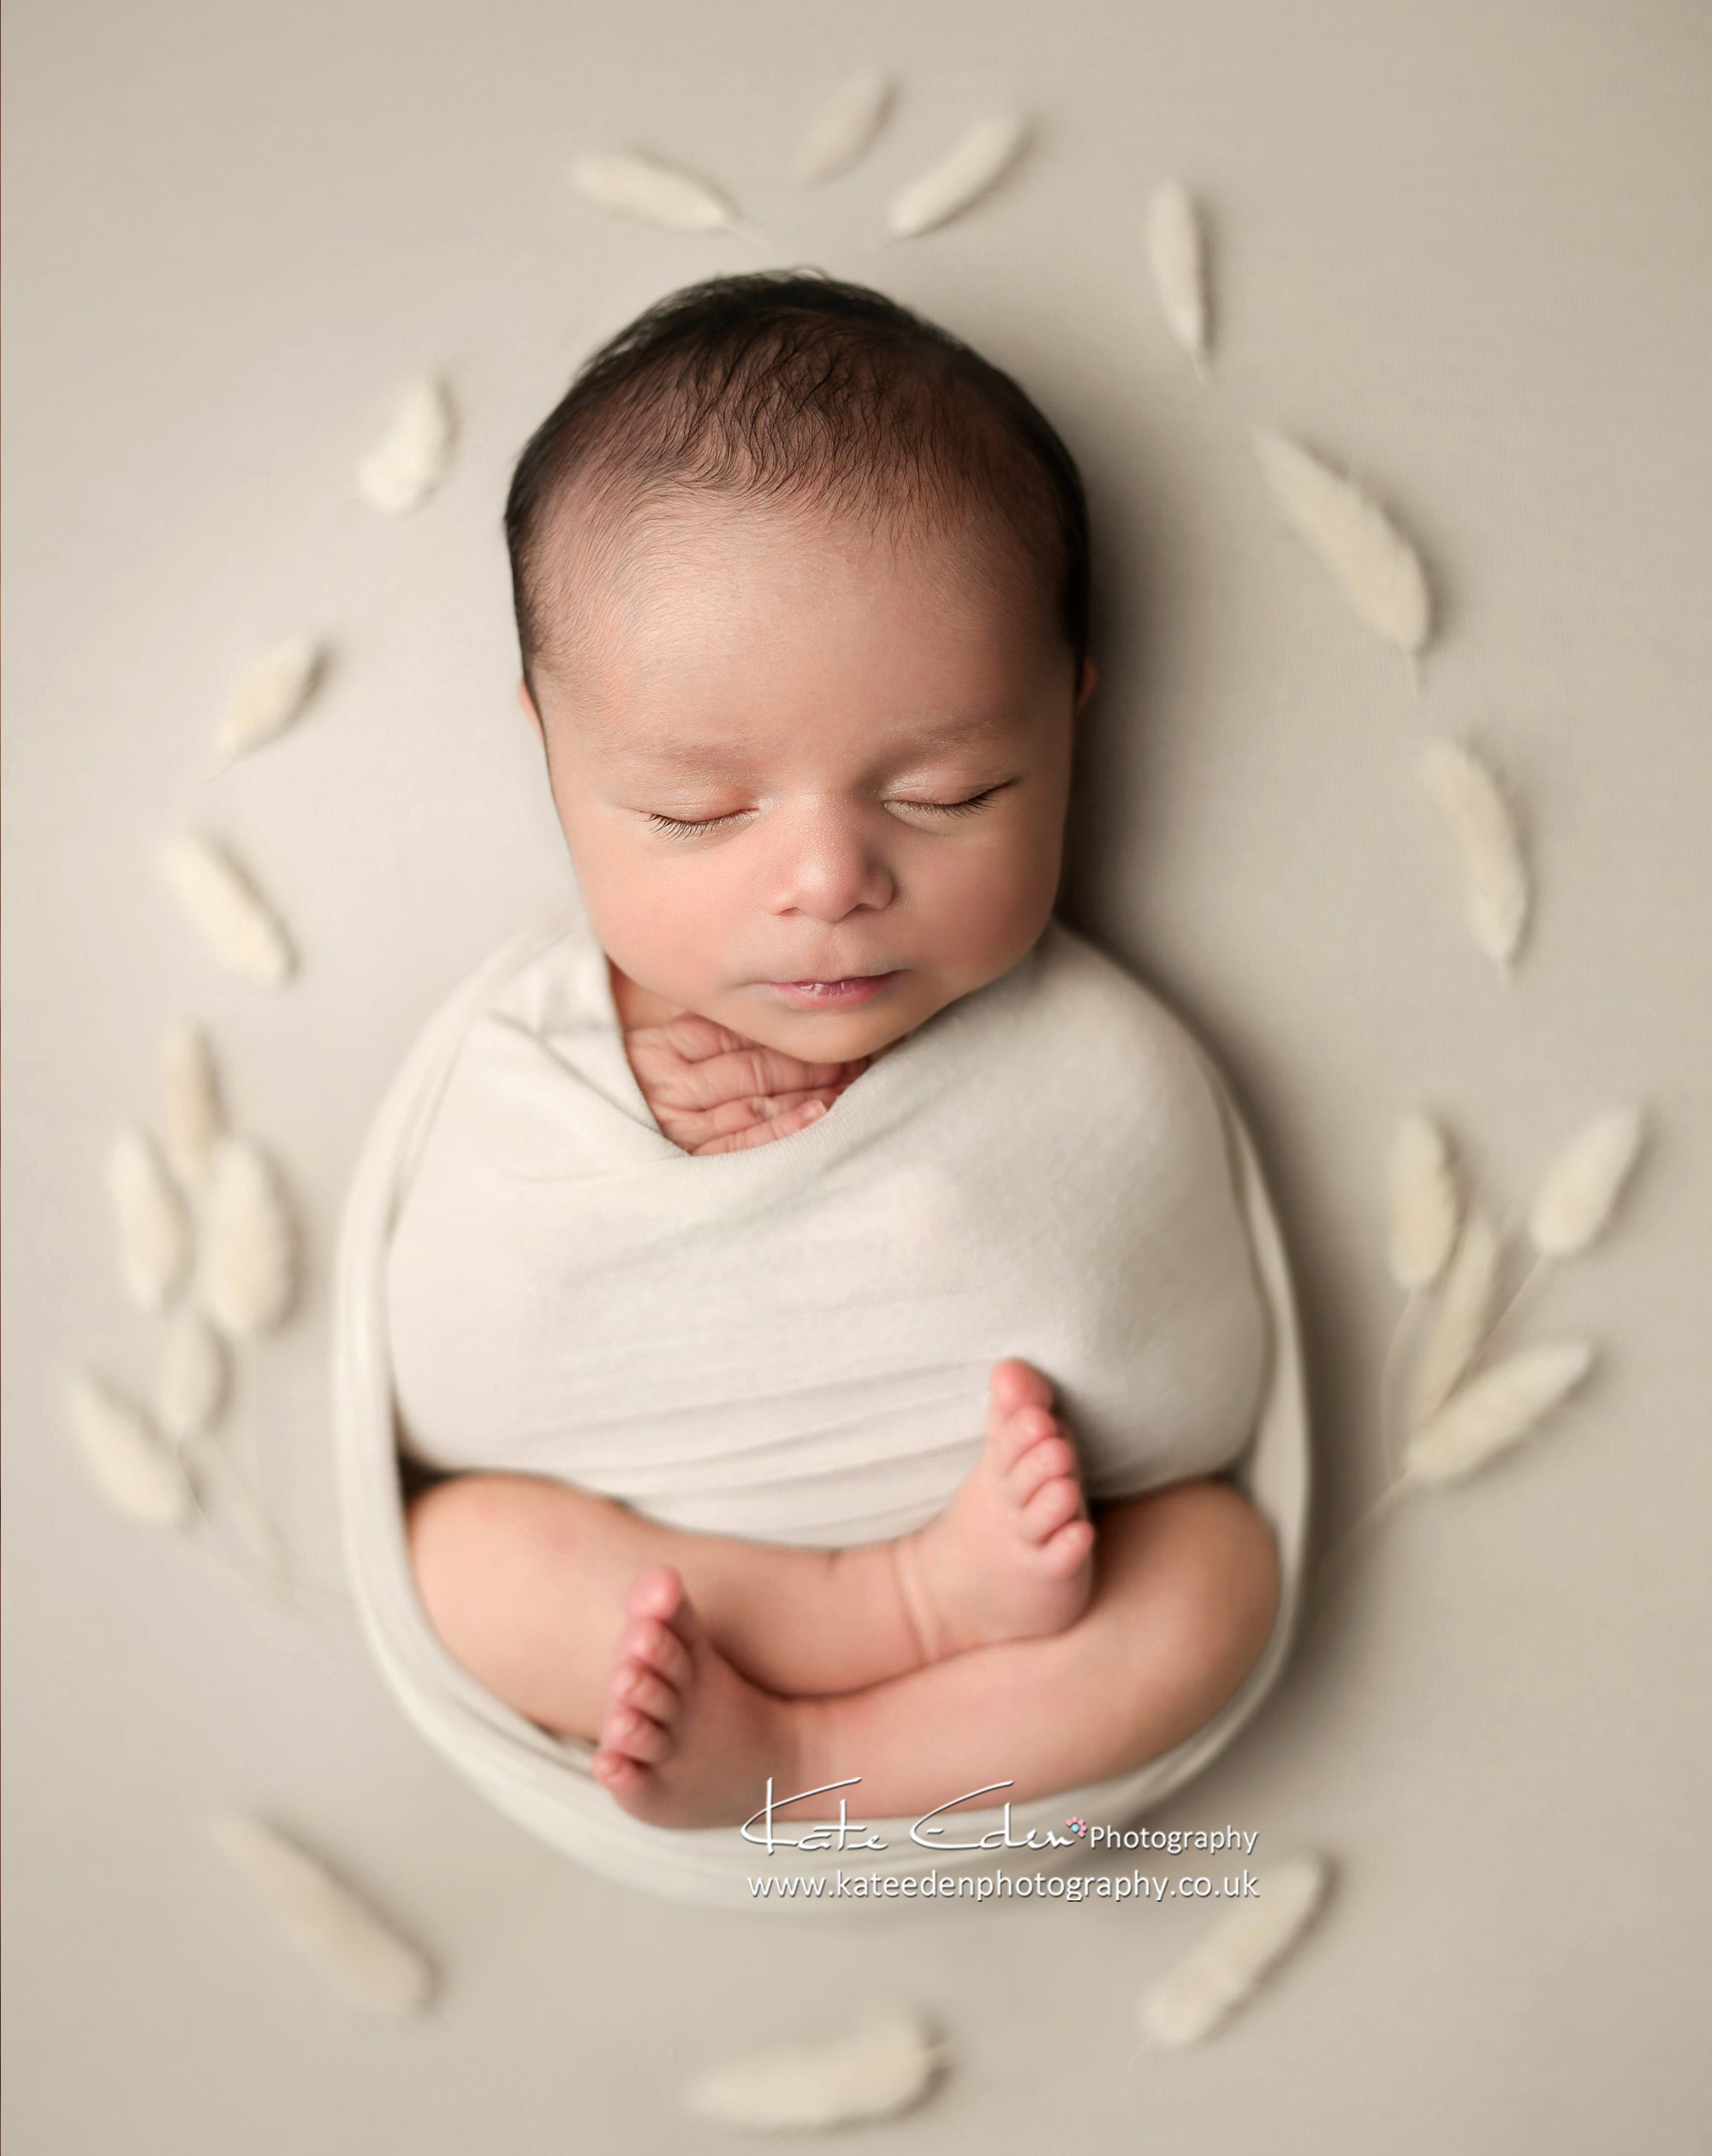  Neutral baby photography|Milton Keynes newborn Photography|Kate Eden Photography